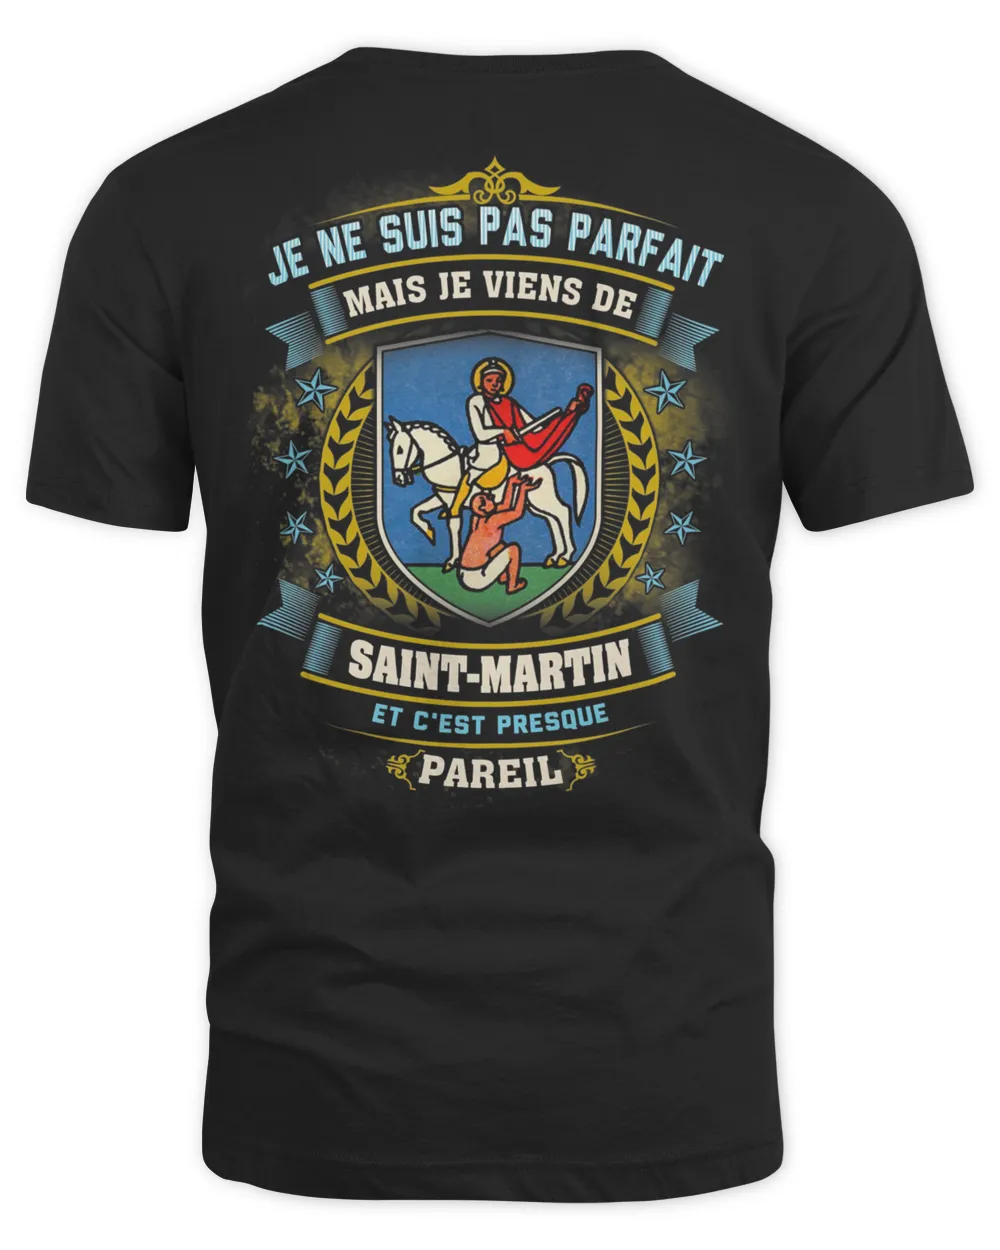 Je Ne Suis Pas Parfait Mais Je Viens De Saint-Martin Et C'est Presque Pareil Shirt